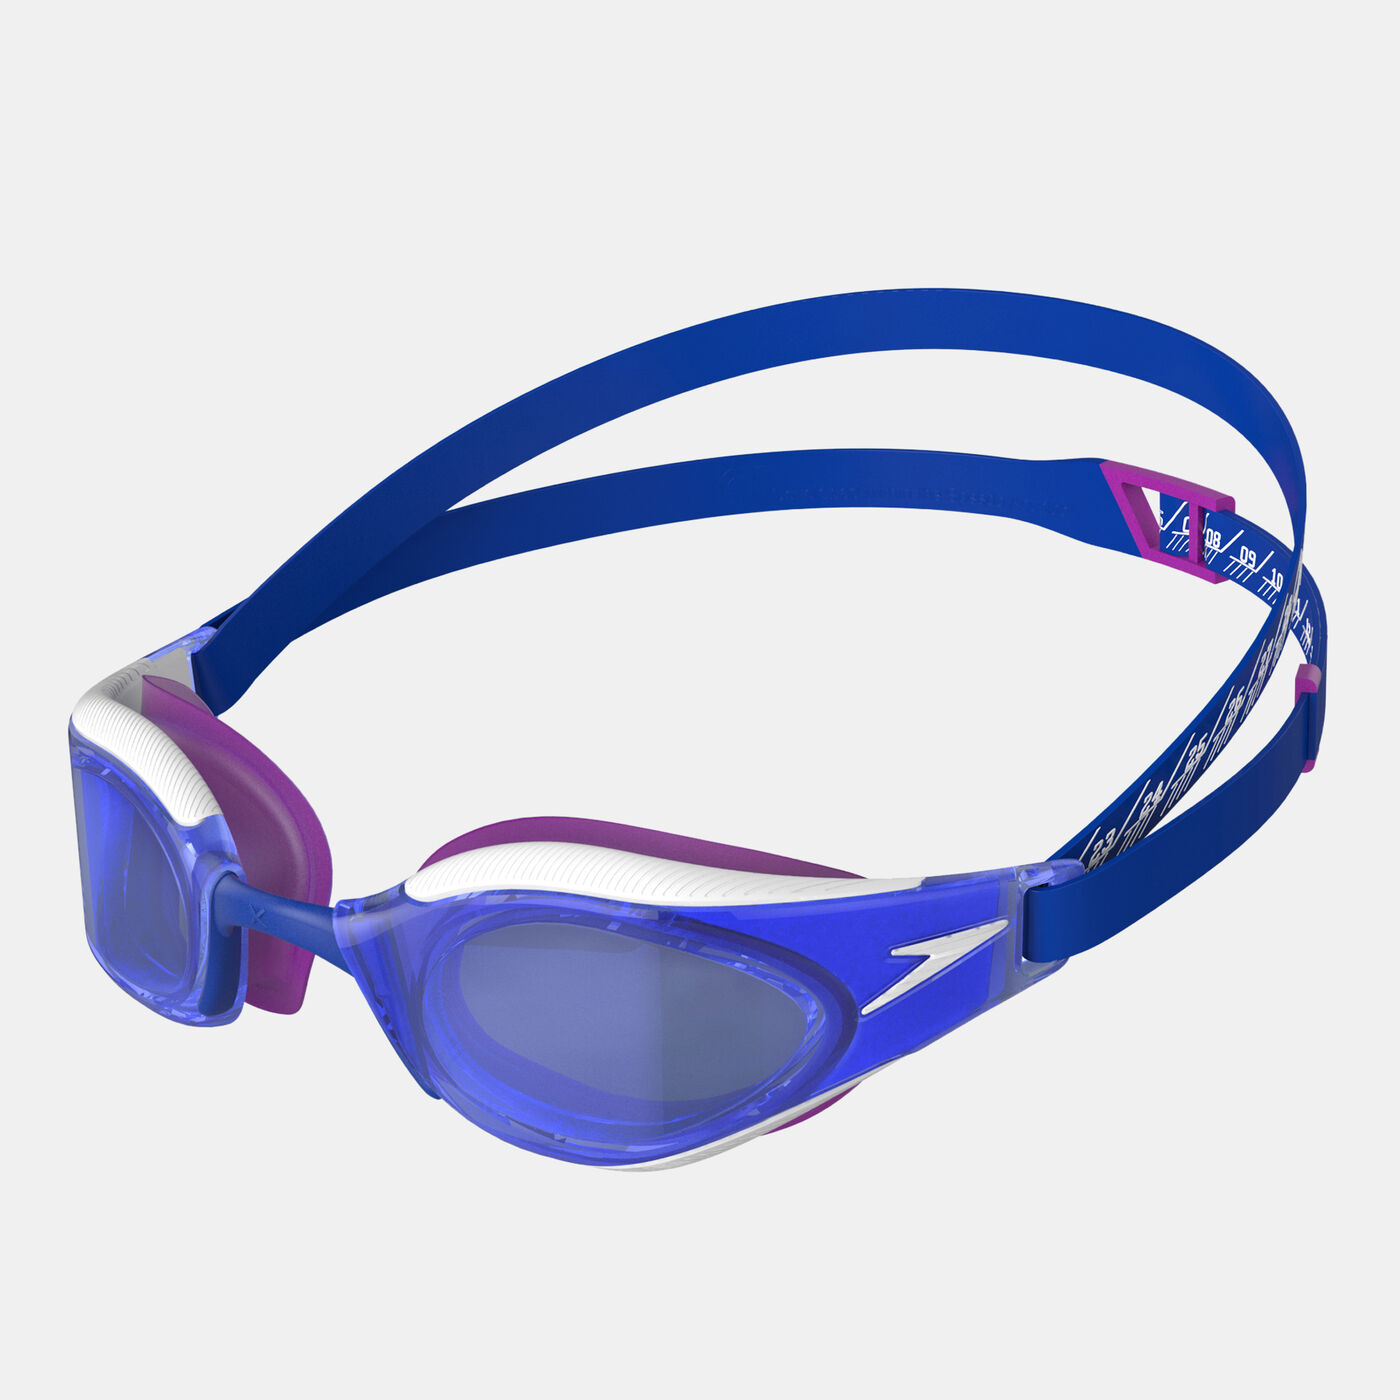 Fastskin Hyper Elite Swimming Goggles